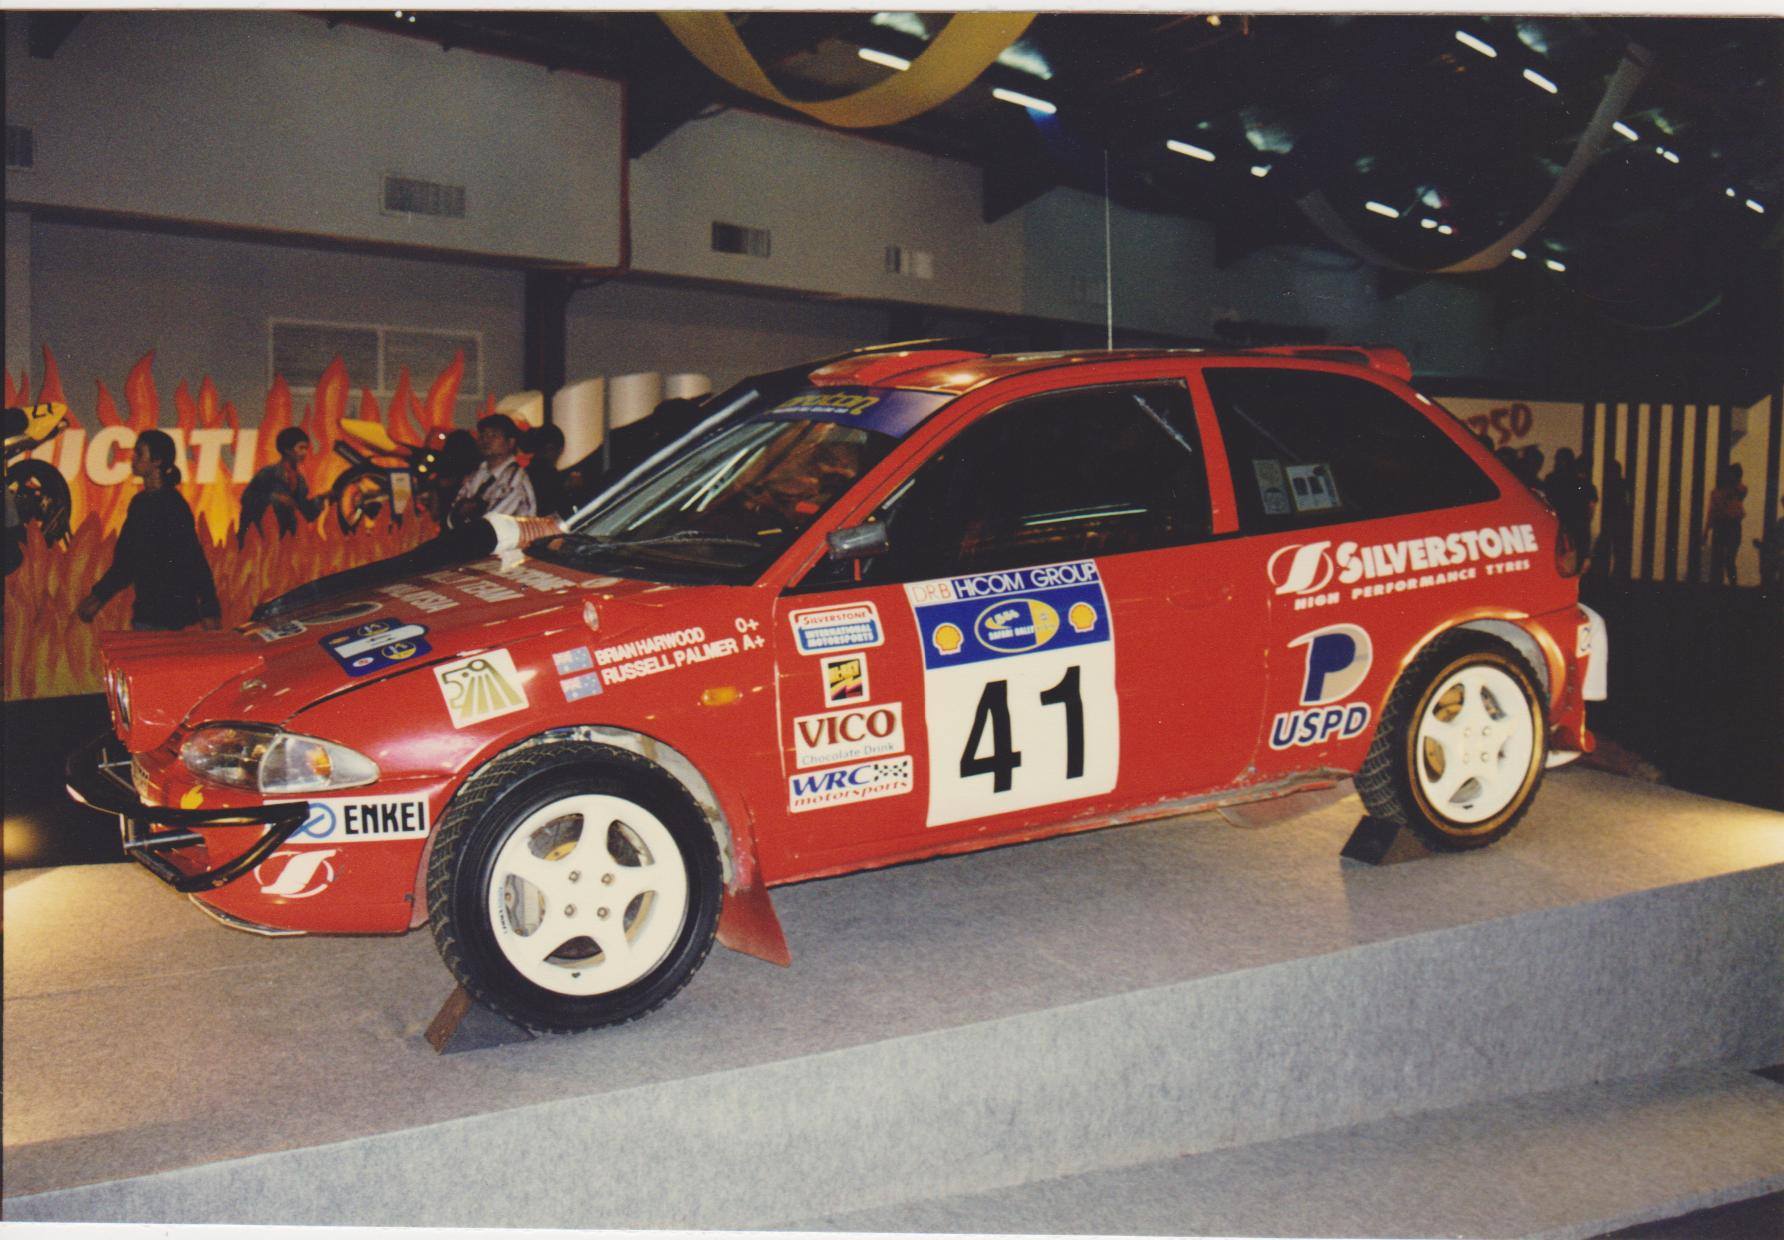 Proton Satria 1.6 Group A - pernah menjuarai WRC Rali Safari 1997